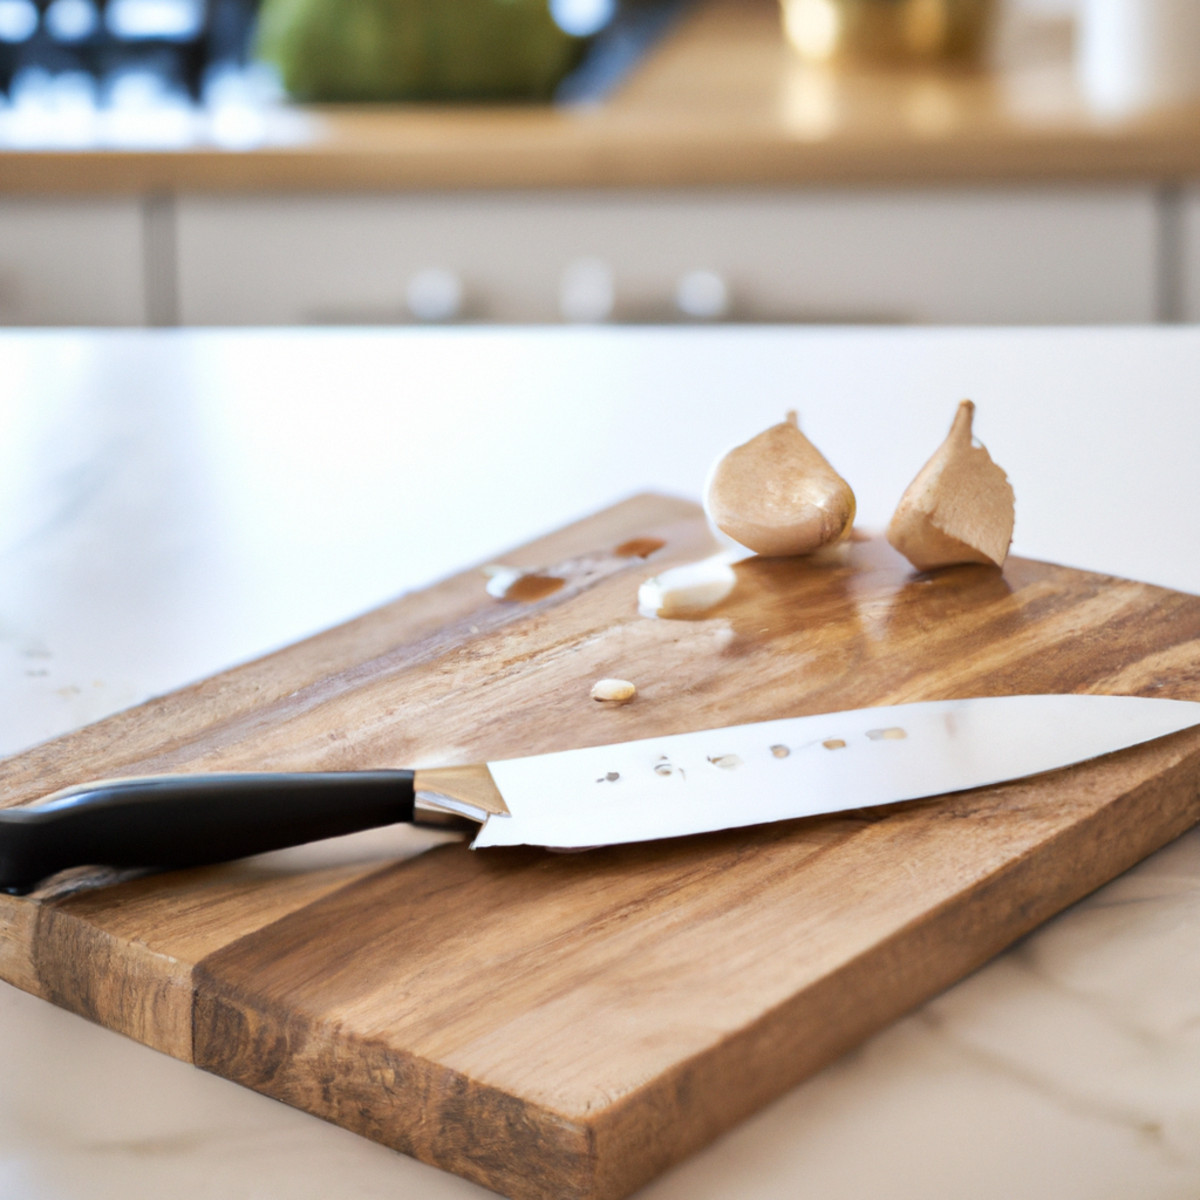 Cuchillos de cocina: Guía completa de diferentes tipos y usos